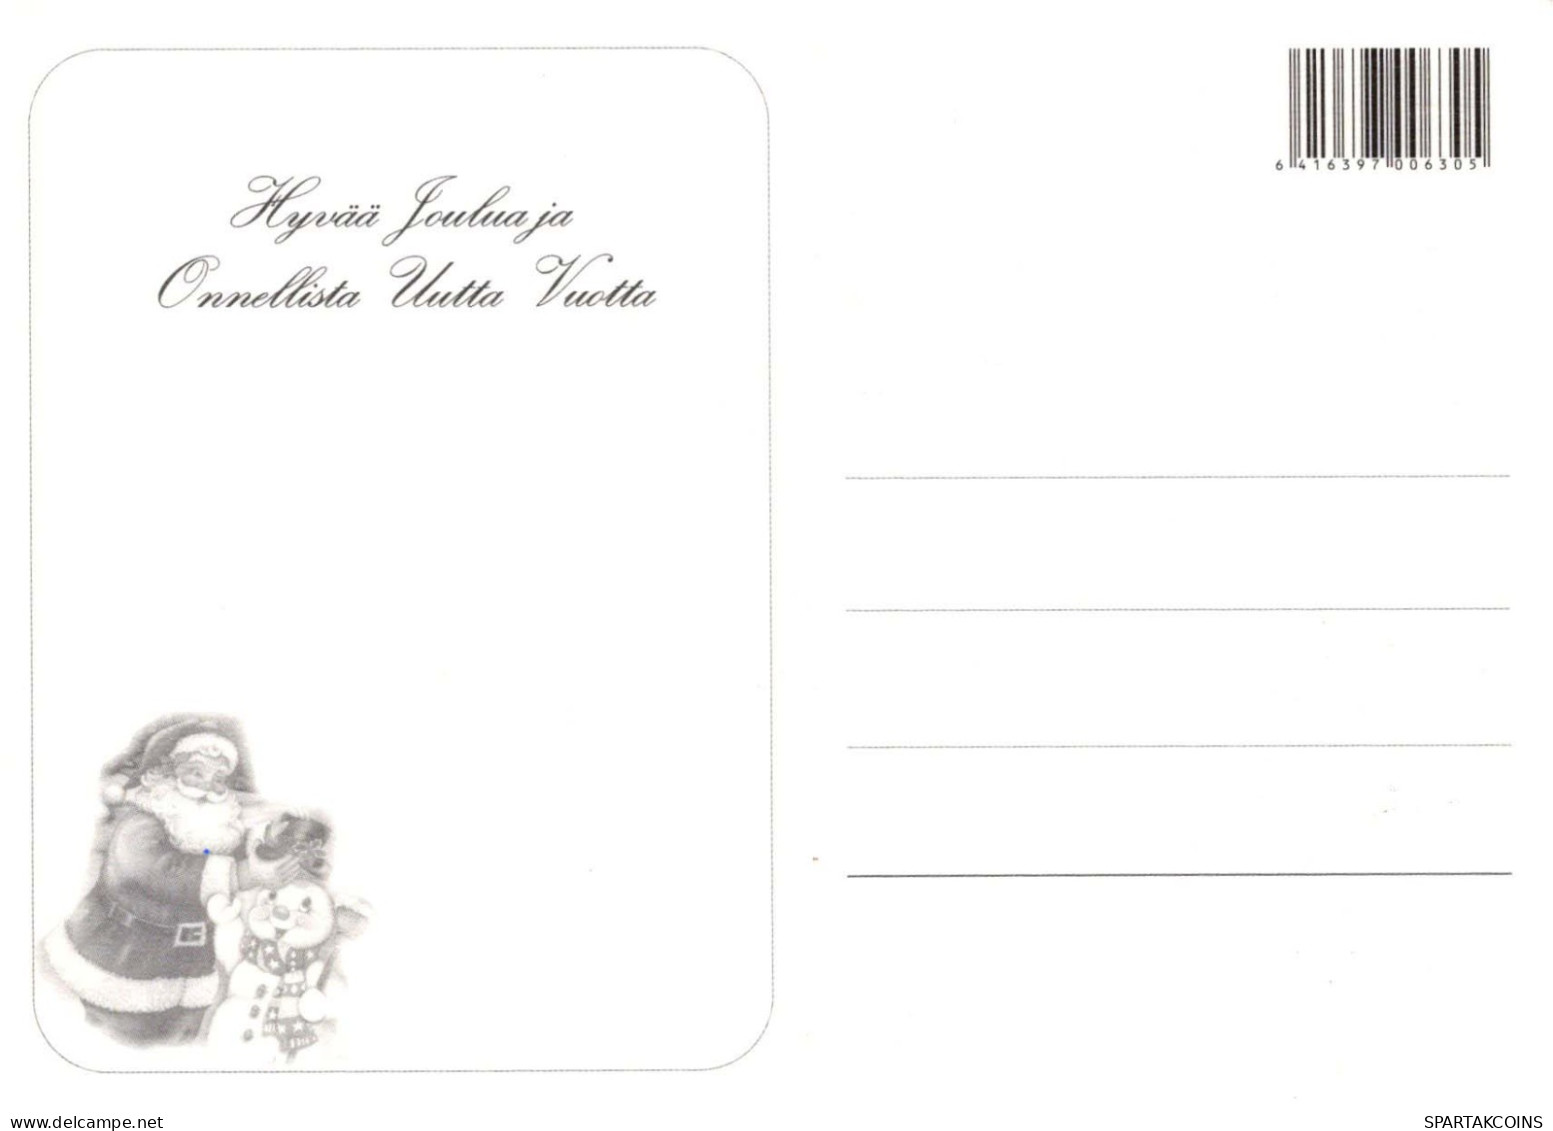 PAPÁ NOEL Feliz Año Navidad Vintage Tarjeta Postal CPSM #PBL066.ES - Santa Claus